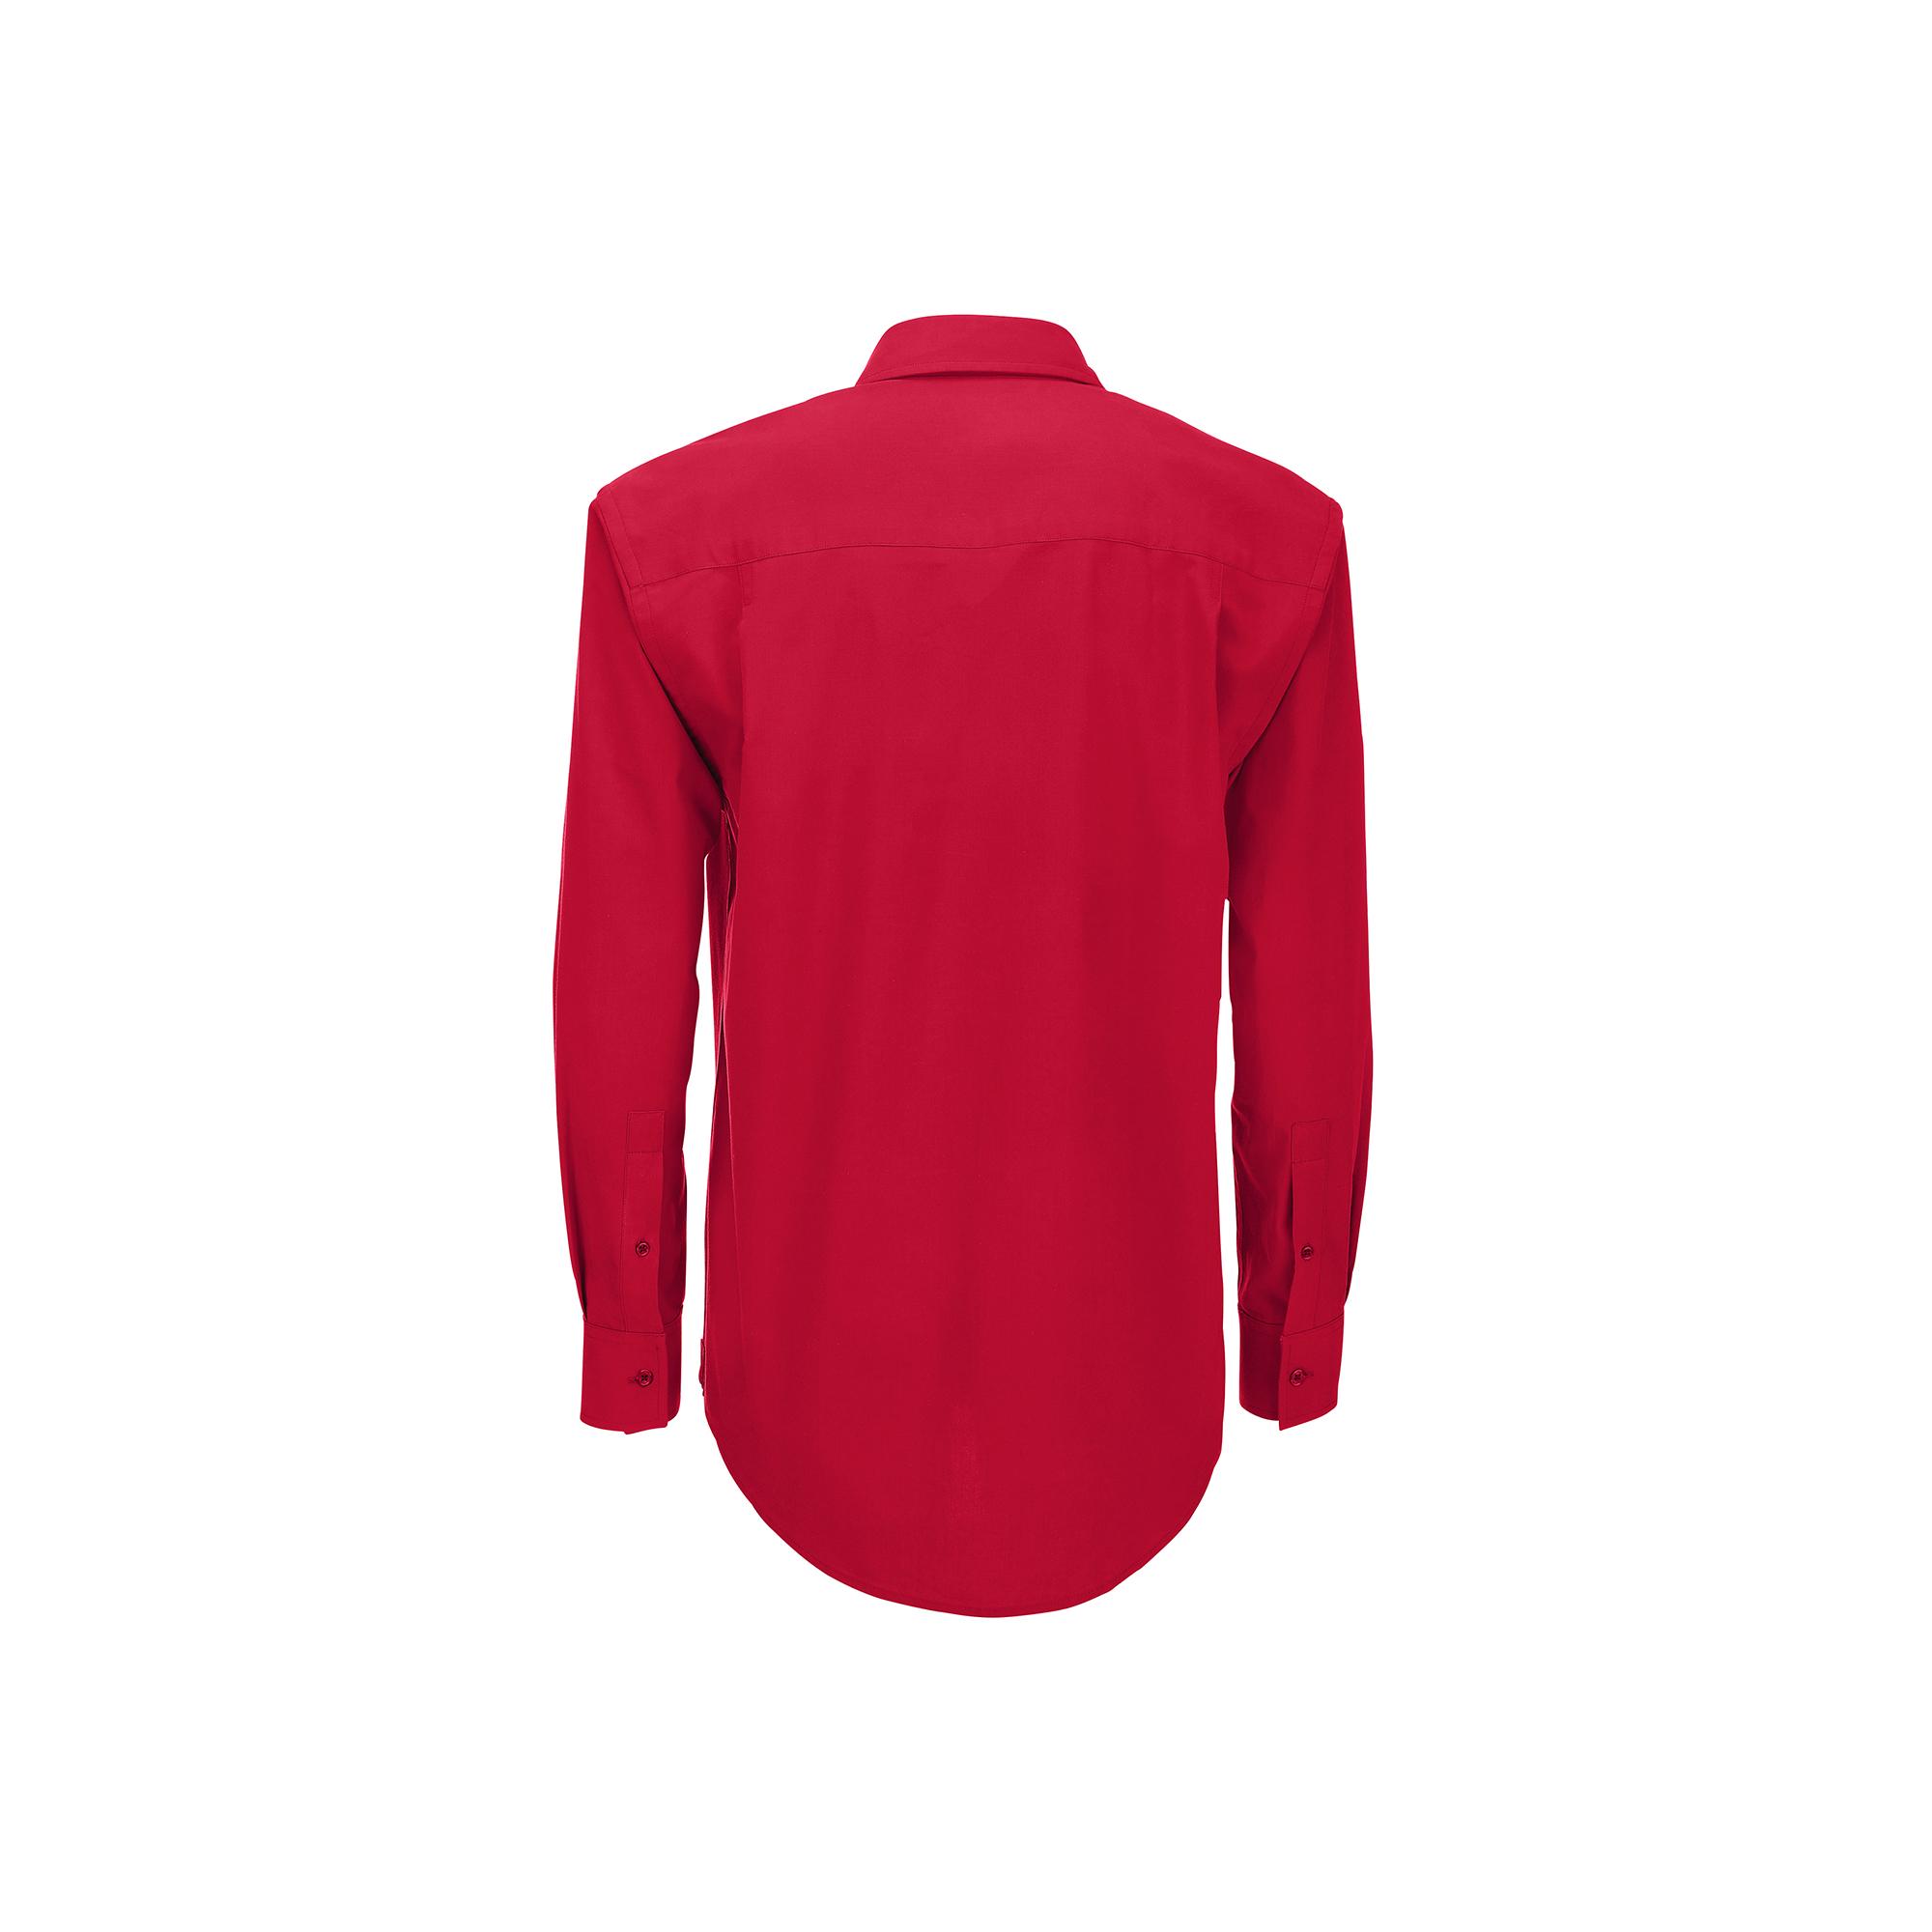 Рубашка мужская с длинным рукавом Heritage LSL/men, цвет темно-красный, фото 2